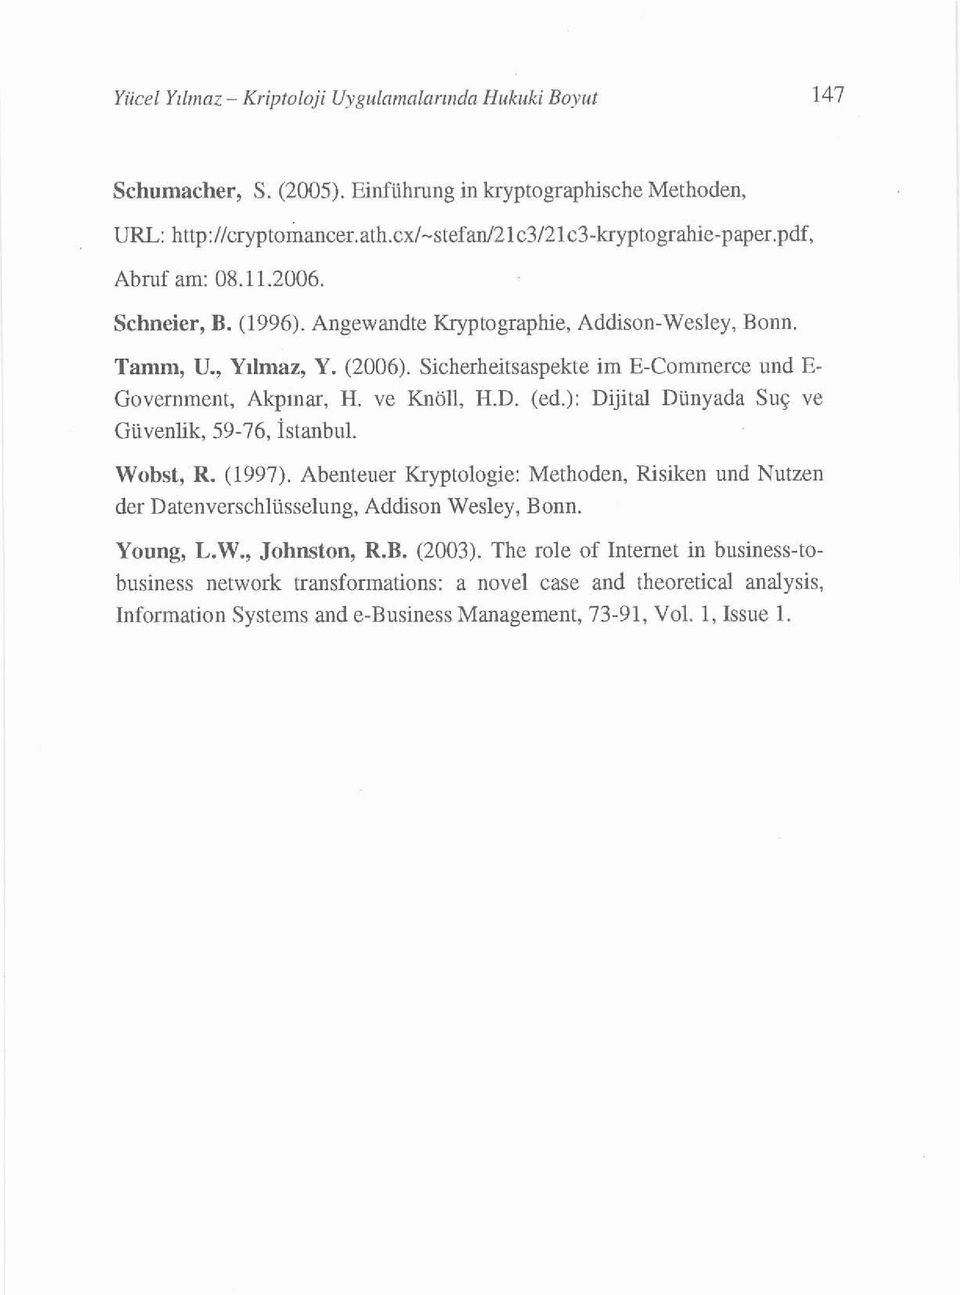 ve Knöll, H.D. (ed.): Dijital Dünyada Suç ve Güvenlik, 59-76, İstanbuL. Wobst, R. (1997). Abenteuer Kryptologie: Methoden, Risiken und Nutzen der Datenverschlüsselung, Addison Wesley, Bonn.